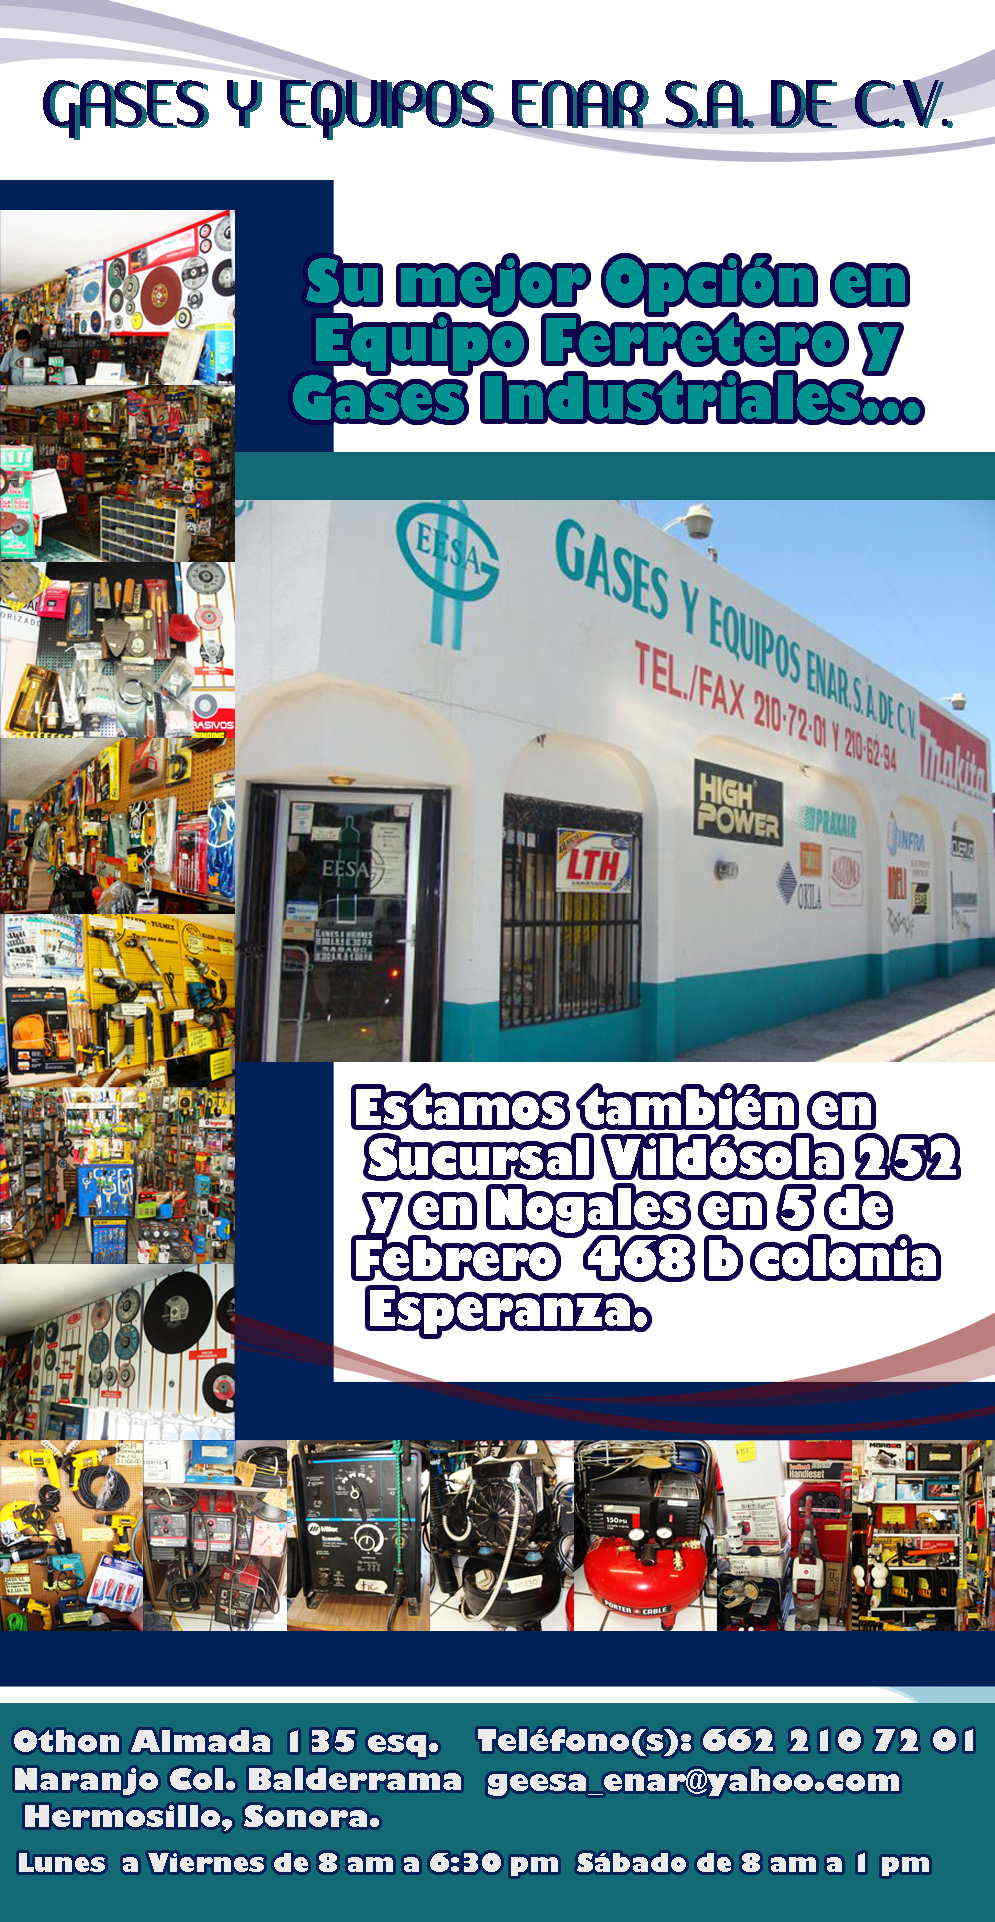 GASES Y EQUIPOS ENAR S.A. DE C.V.-Su mejor Opción en Equipo Ferretero y Gases Industriales...	
Estamos también en tu sucursal Vildósola 252 y en Nogales en 5 de Febrero  468b col. Esperanza.
                                 